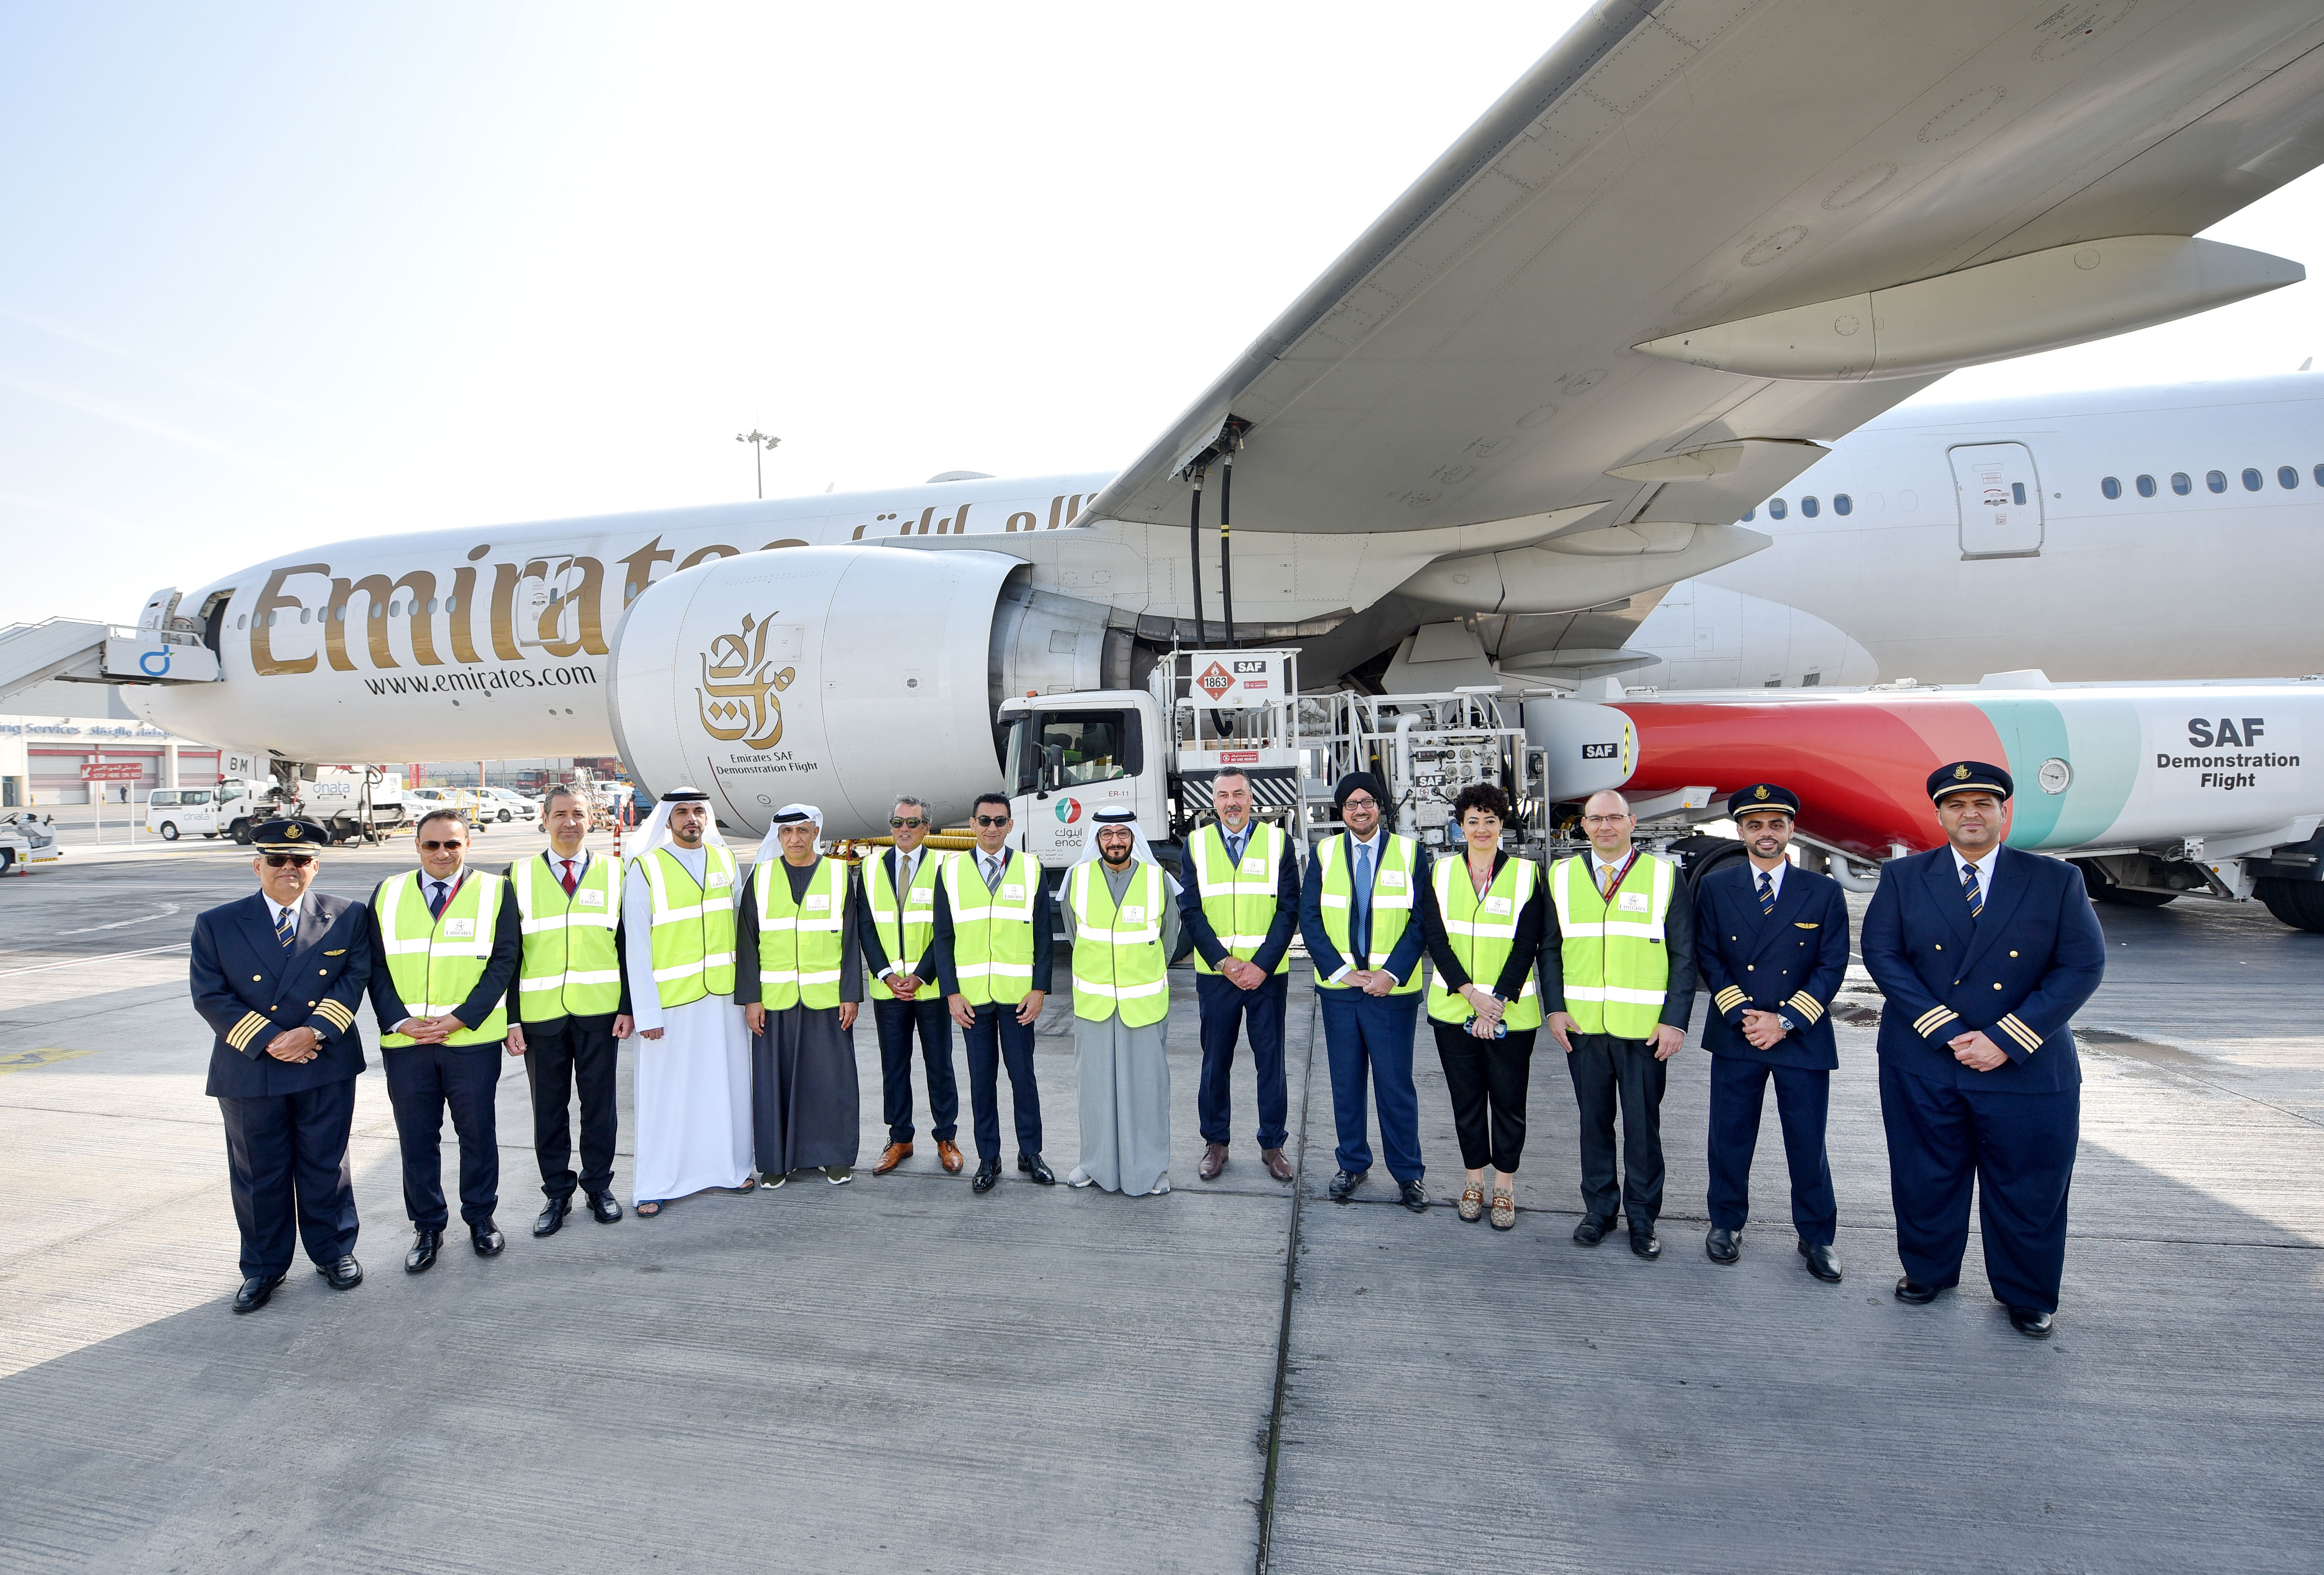 Emirates opera voo de demonstração com combustível de aviação 100% sustentável  | MAIS QUE VOAR | Aviação - Notícias - Fotos